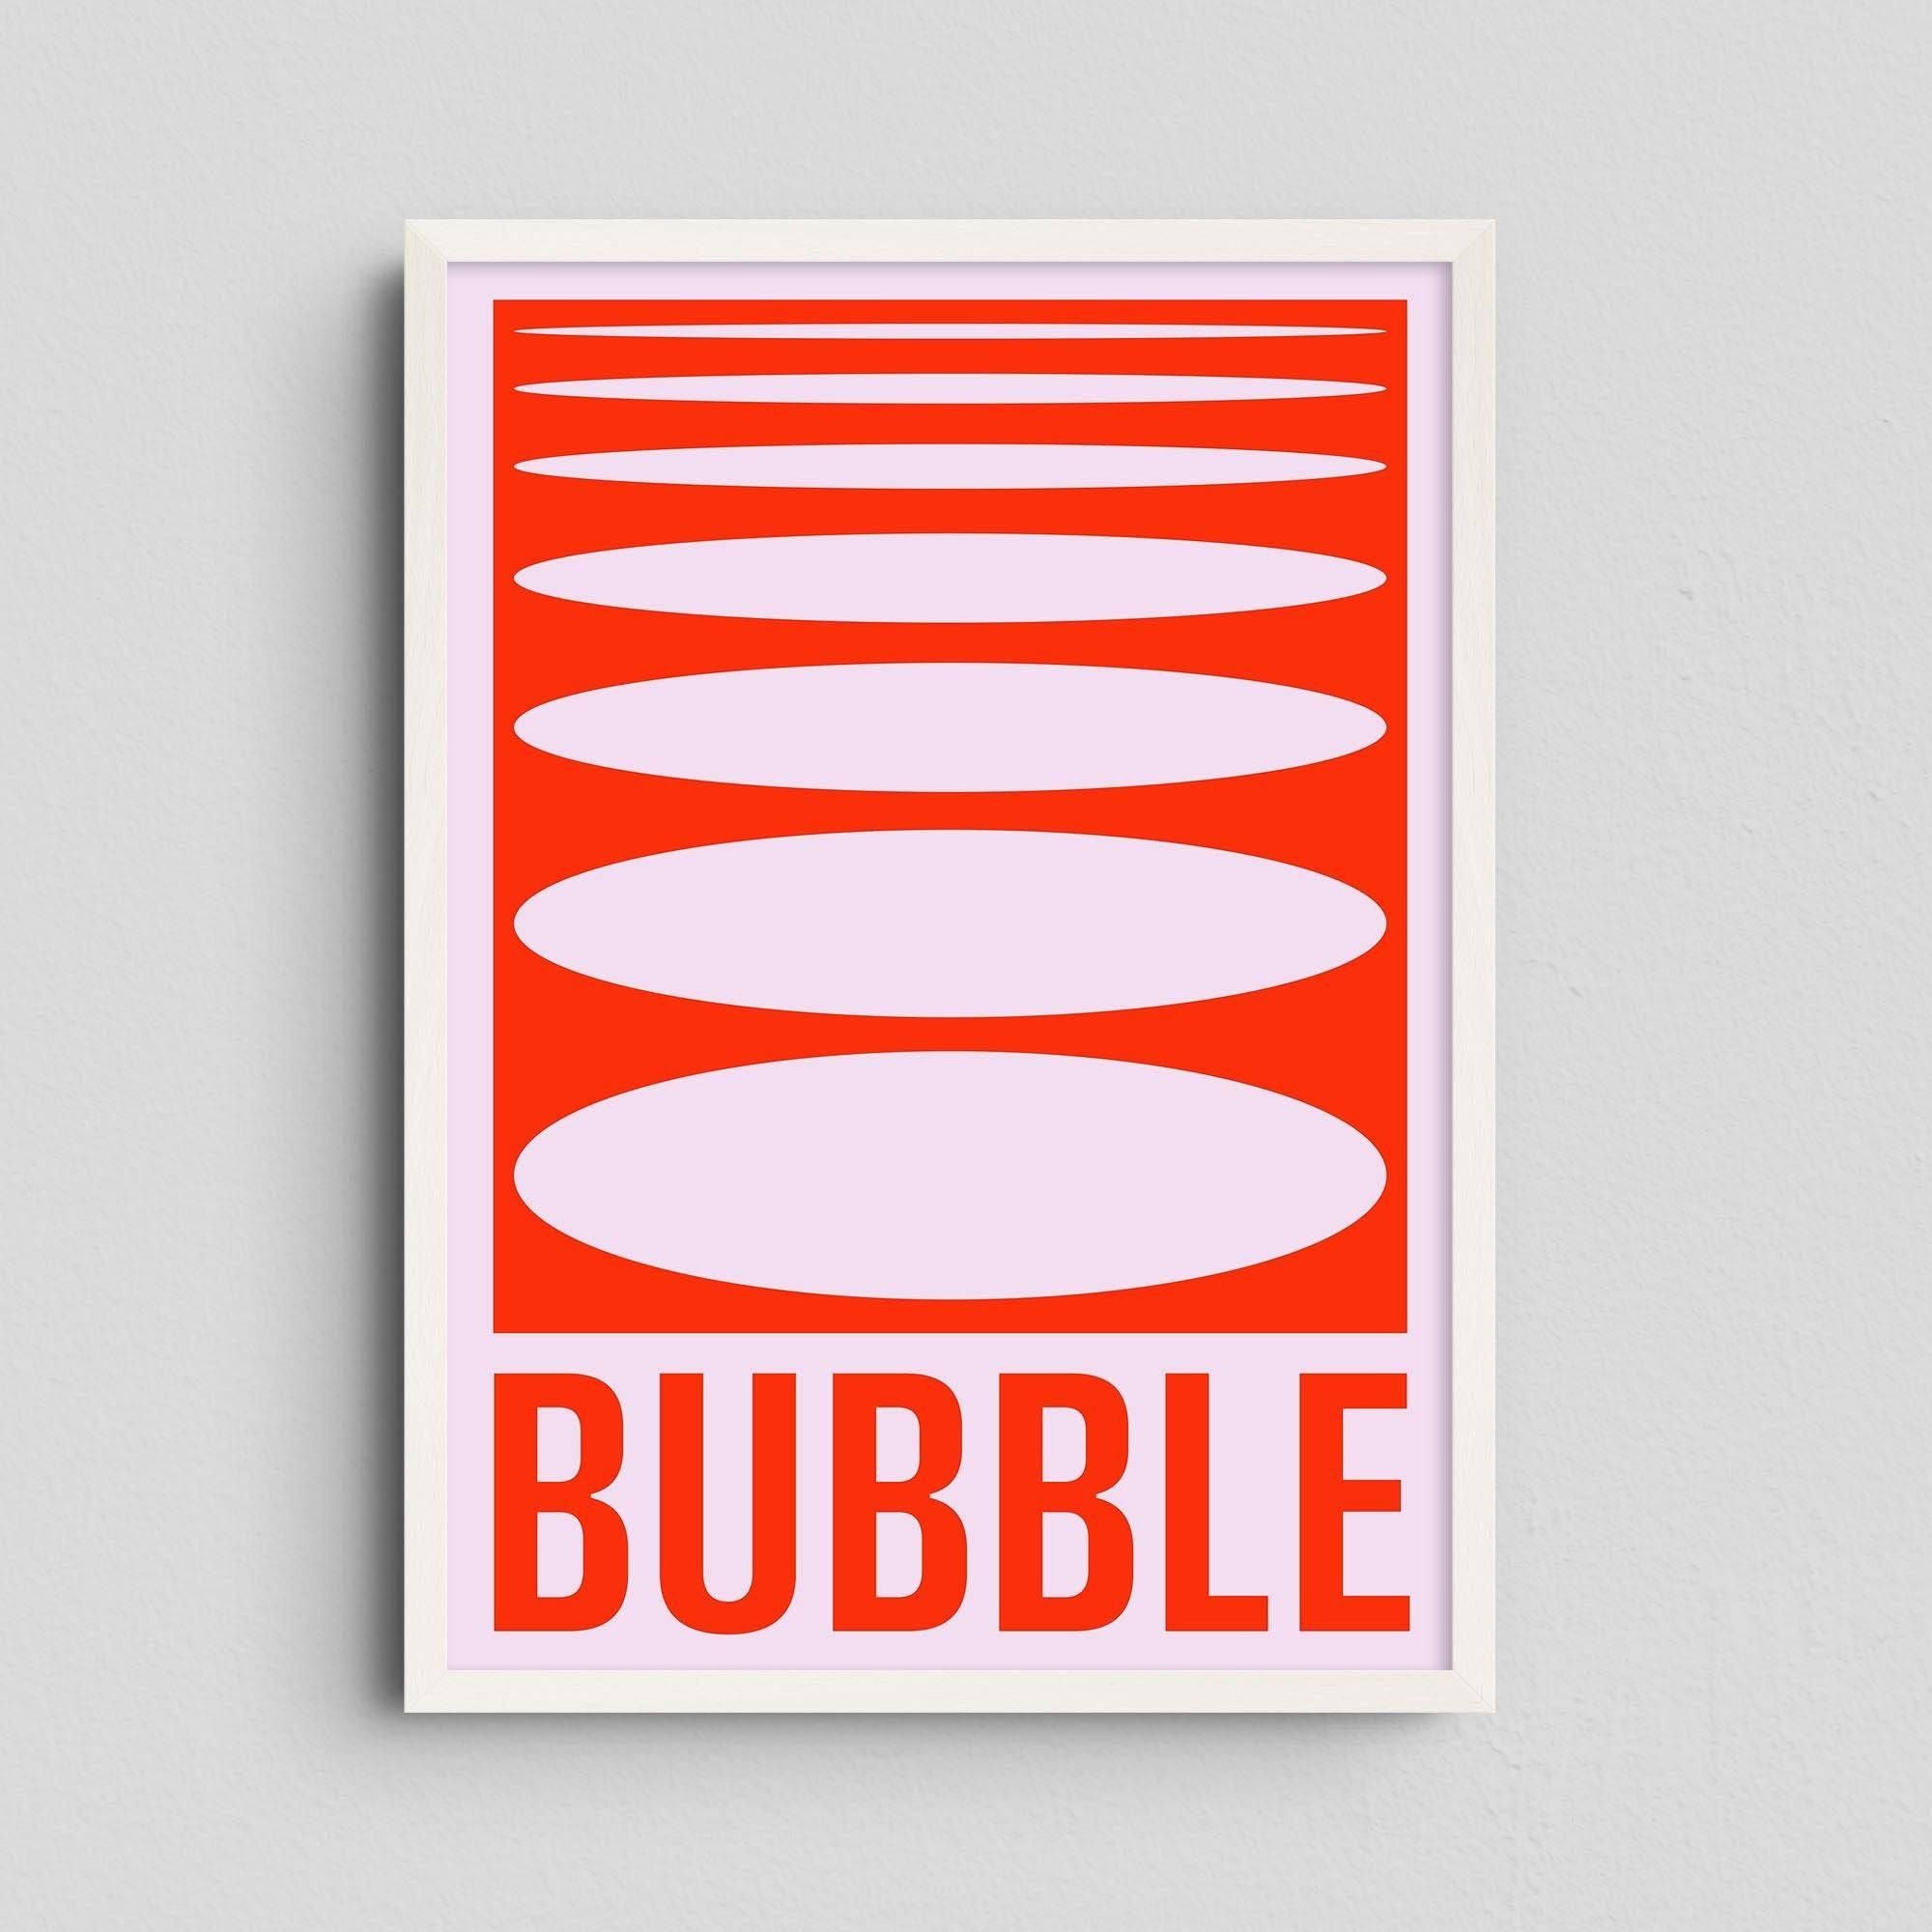 Bubble - Jérôme Bizien